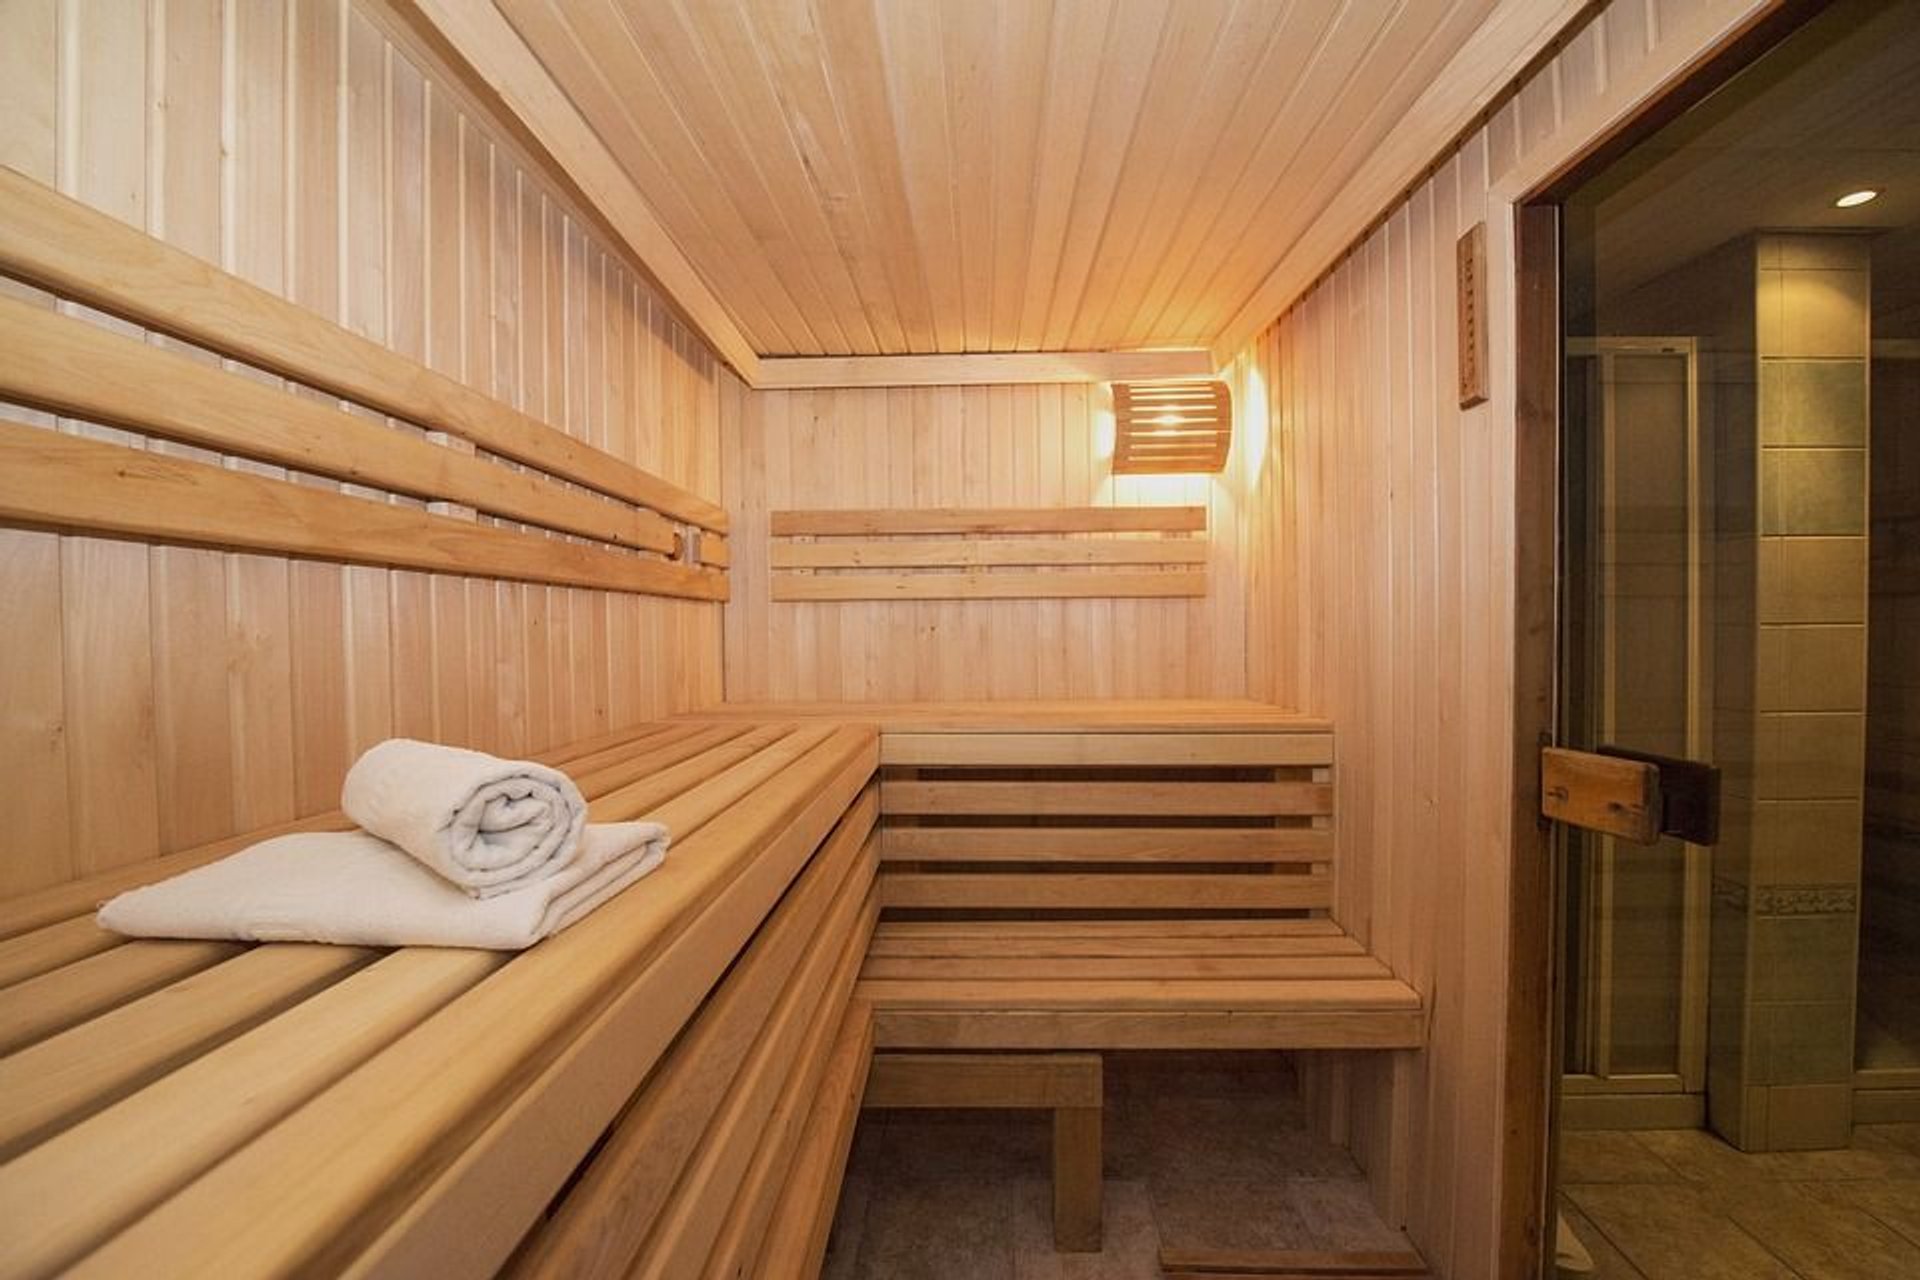 Budowa sauny w domu – cechy charakterystyczne, rodzaje, analiza czynników oraz prawidłowy montaż urządzenia